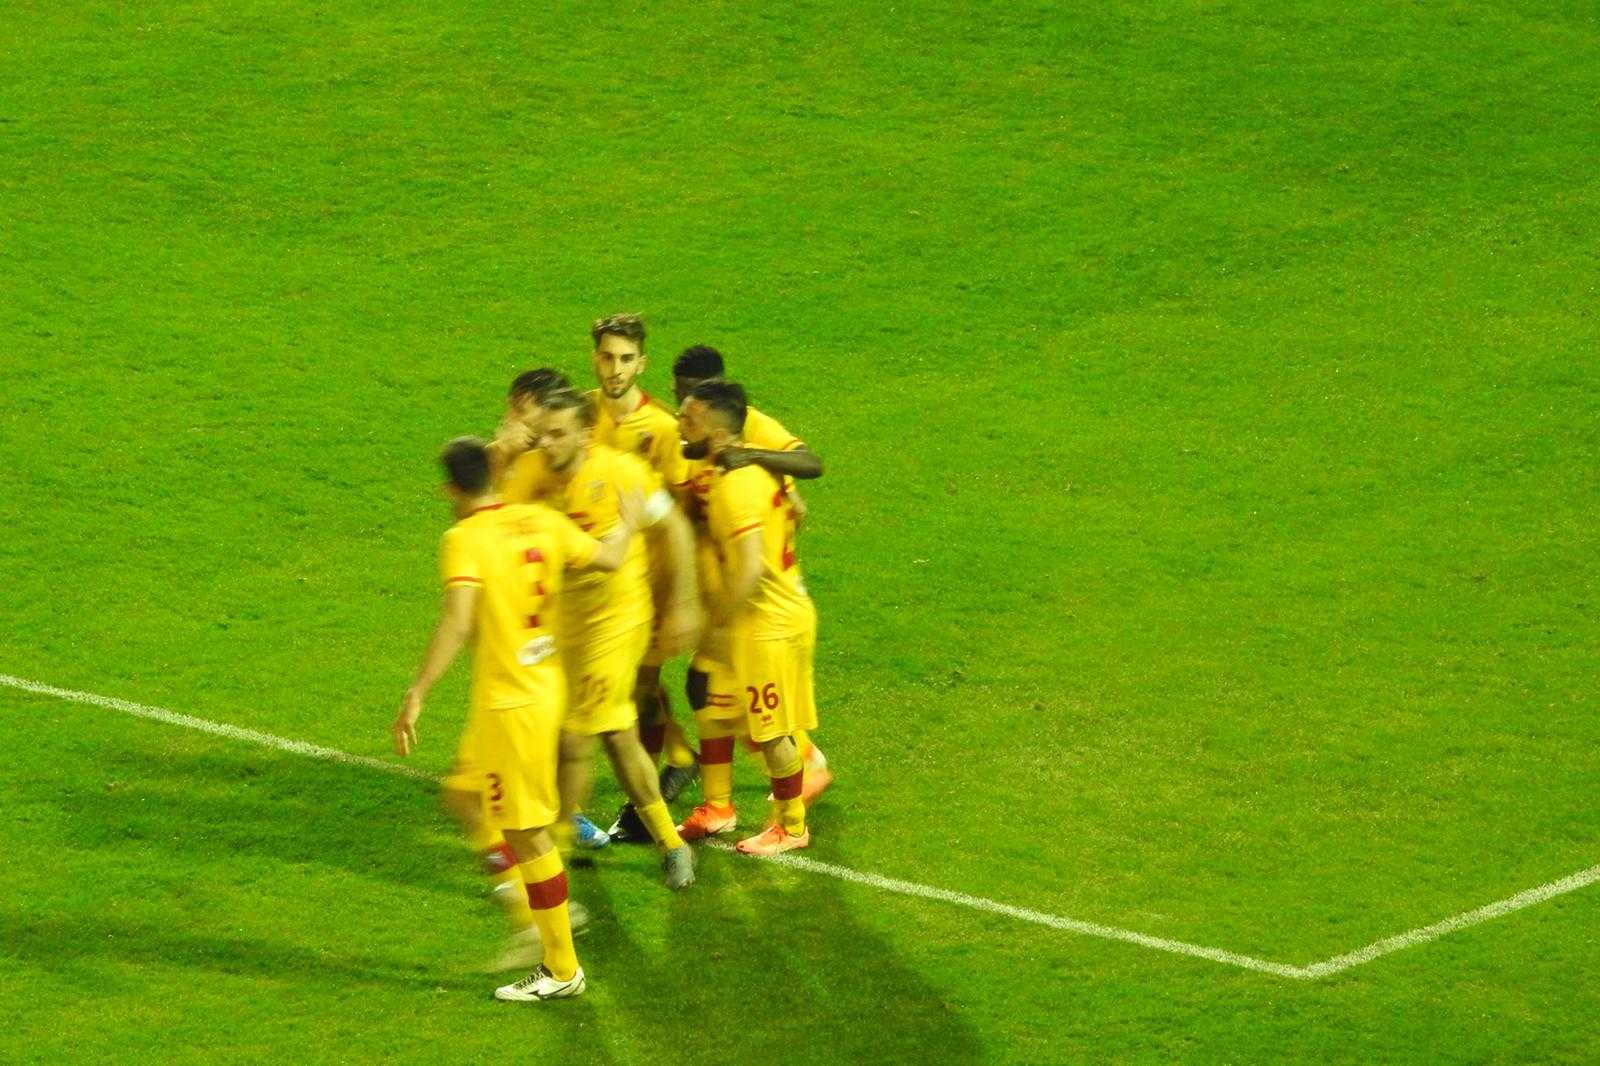 Calcio. Catanzaro-Monopoli 1-2, giallorossi sorpassati nel finale (con highlights)